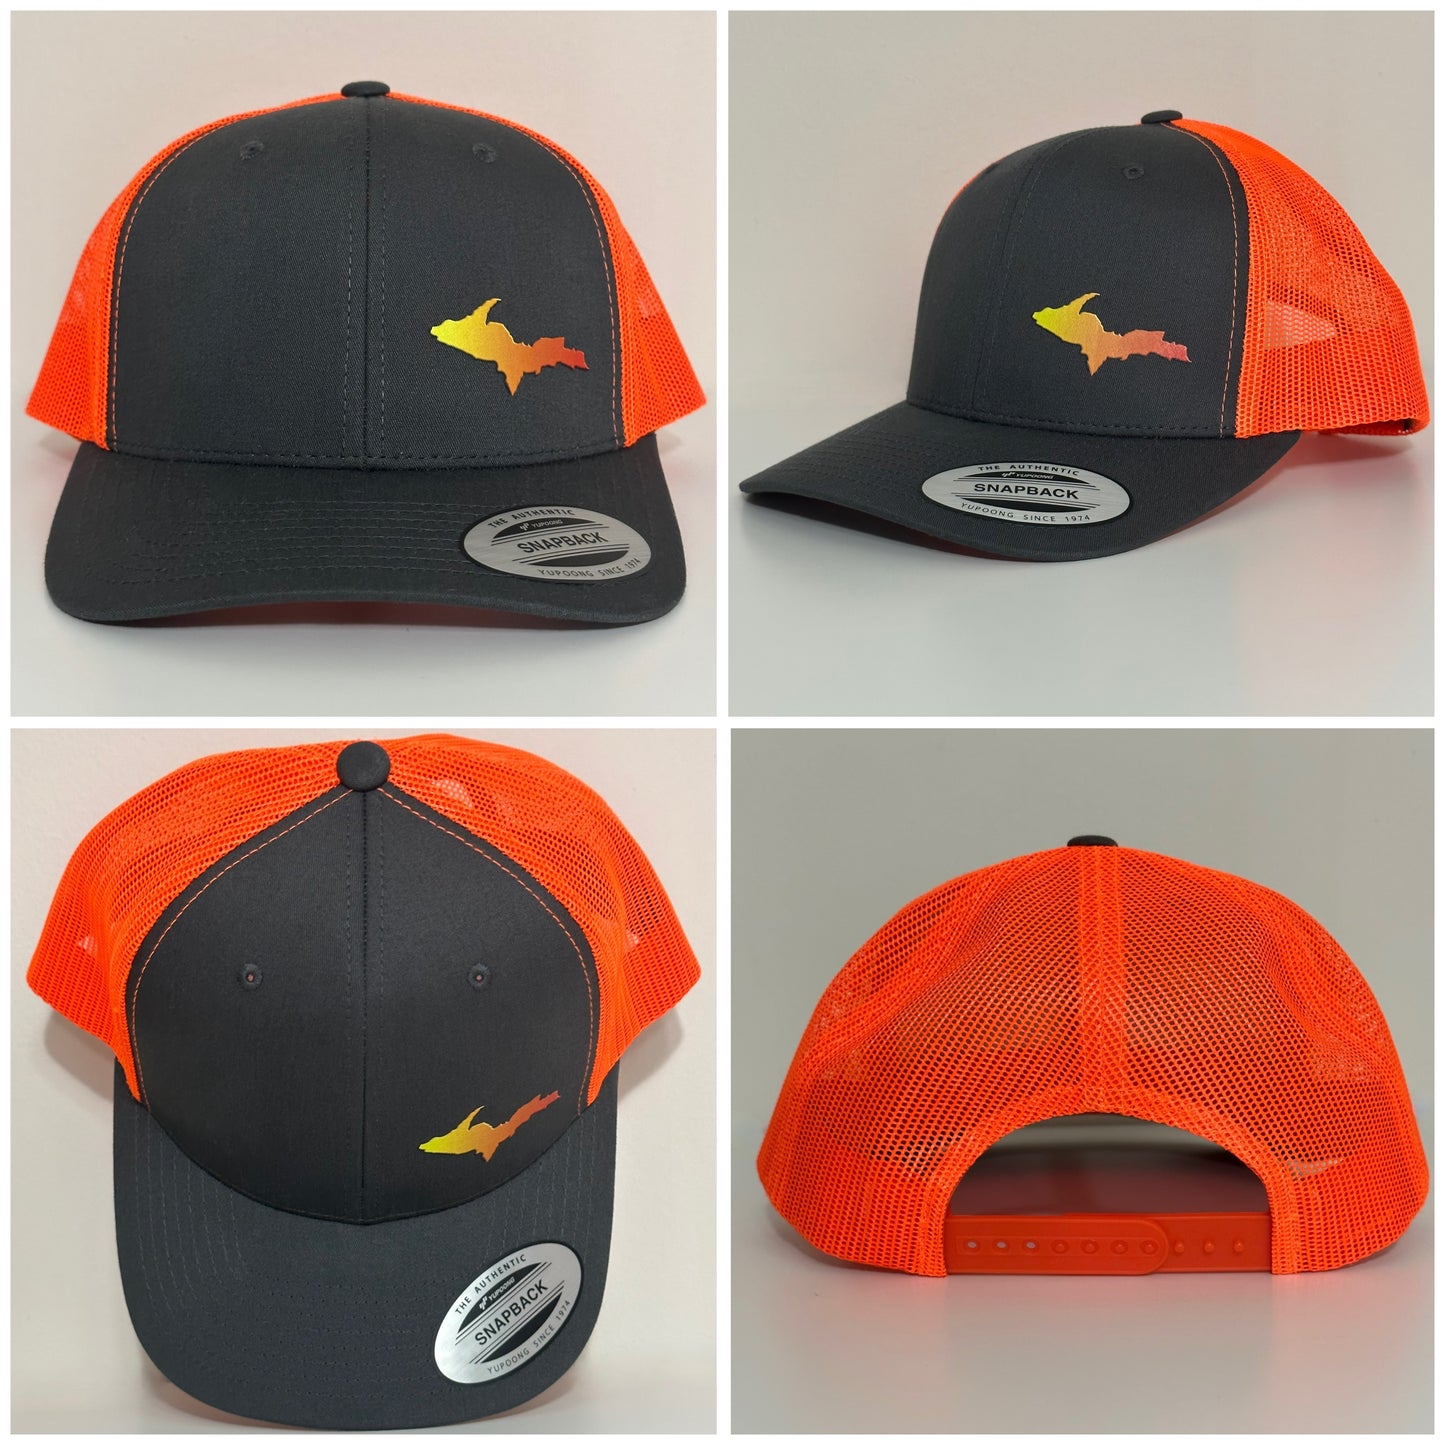 Michigan U.P. “Sunset” Trucker Hat